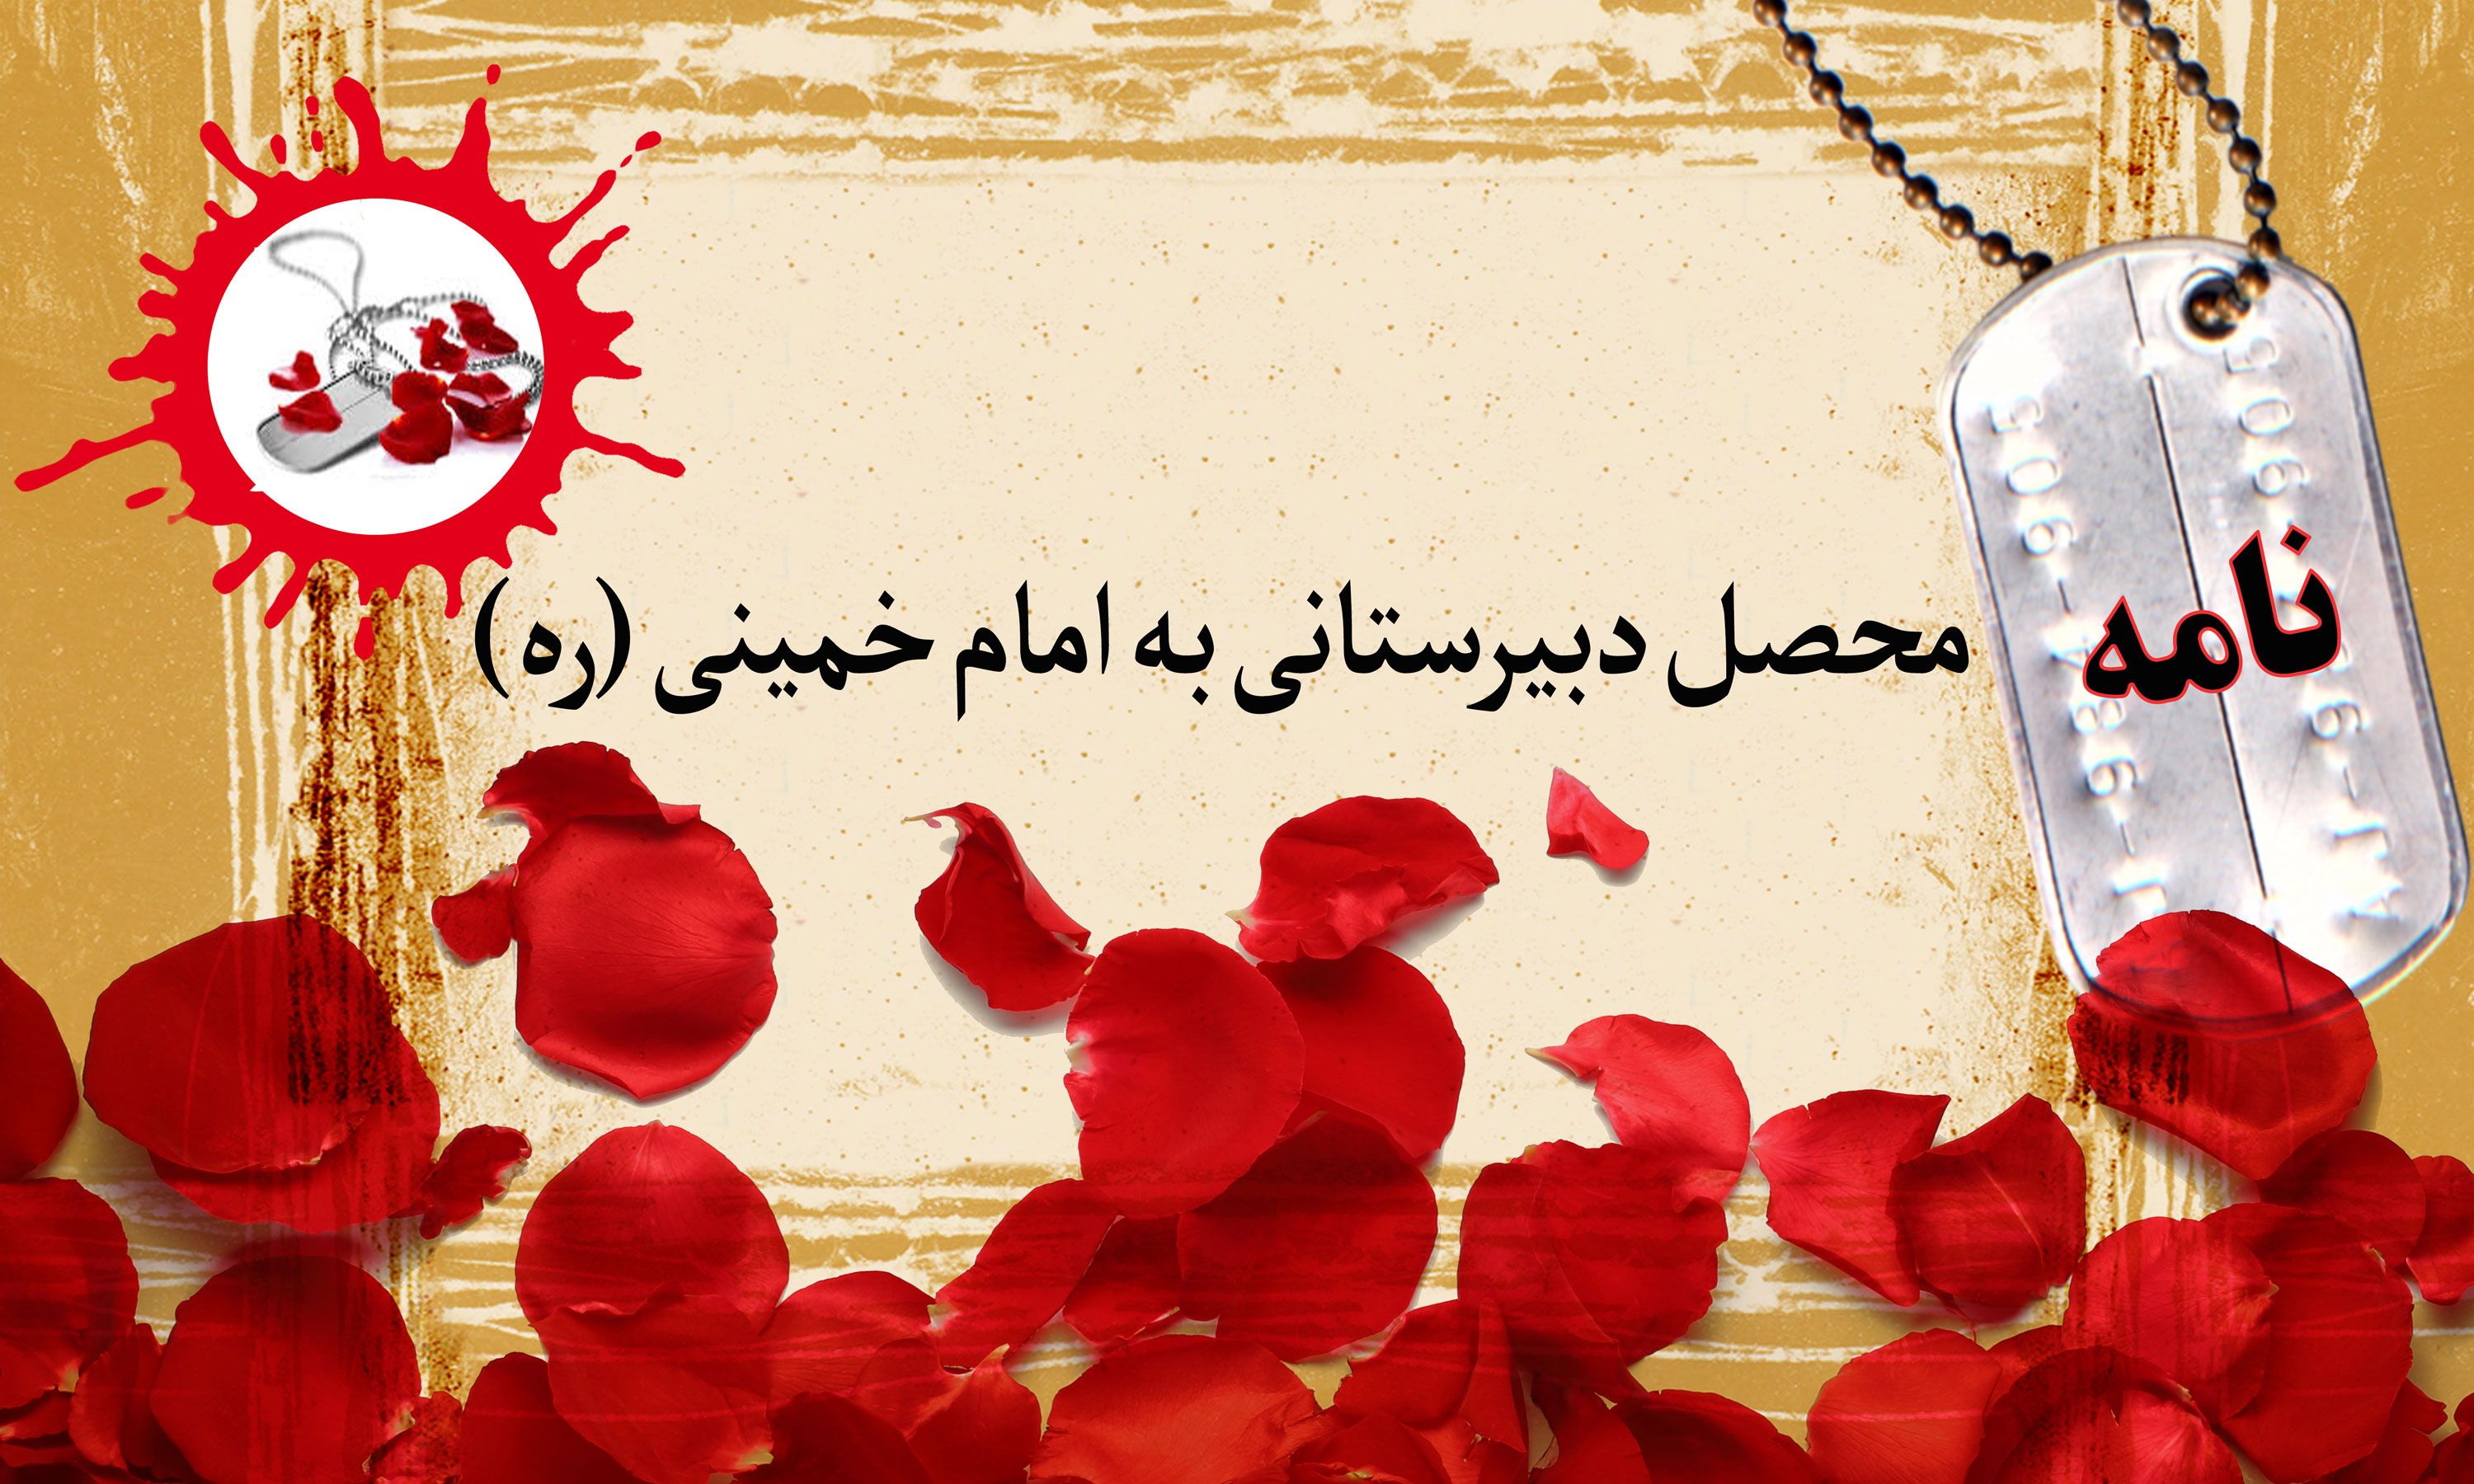 نامه محصل دبیرستانی به امام خمینی (ره)/ آرزو دارم شما را زیارت کنم